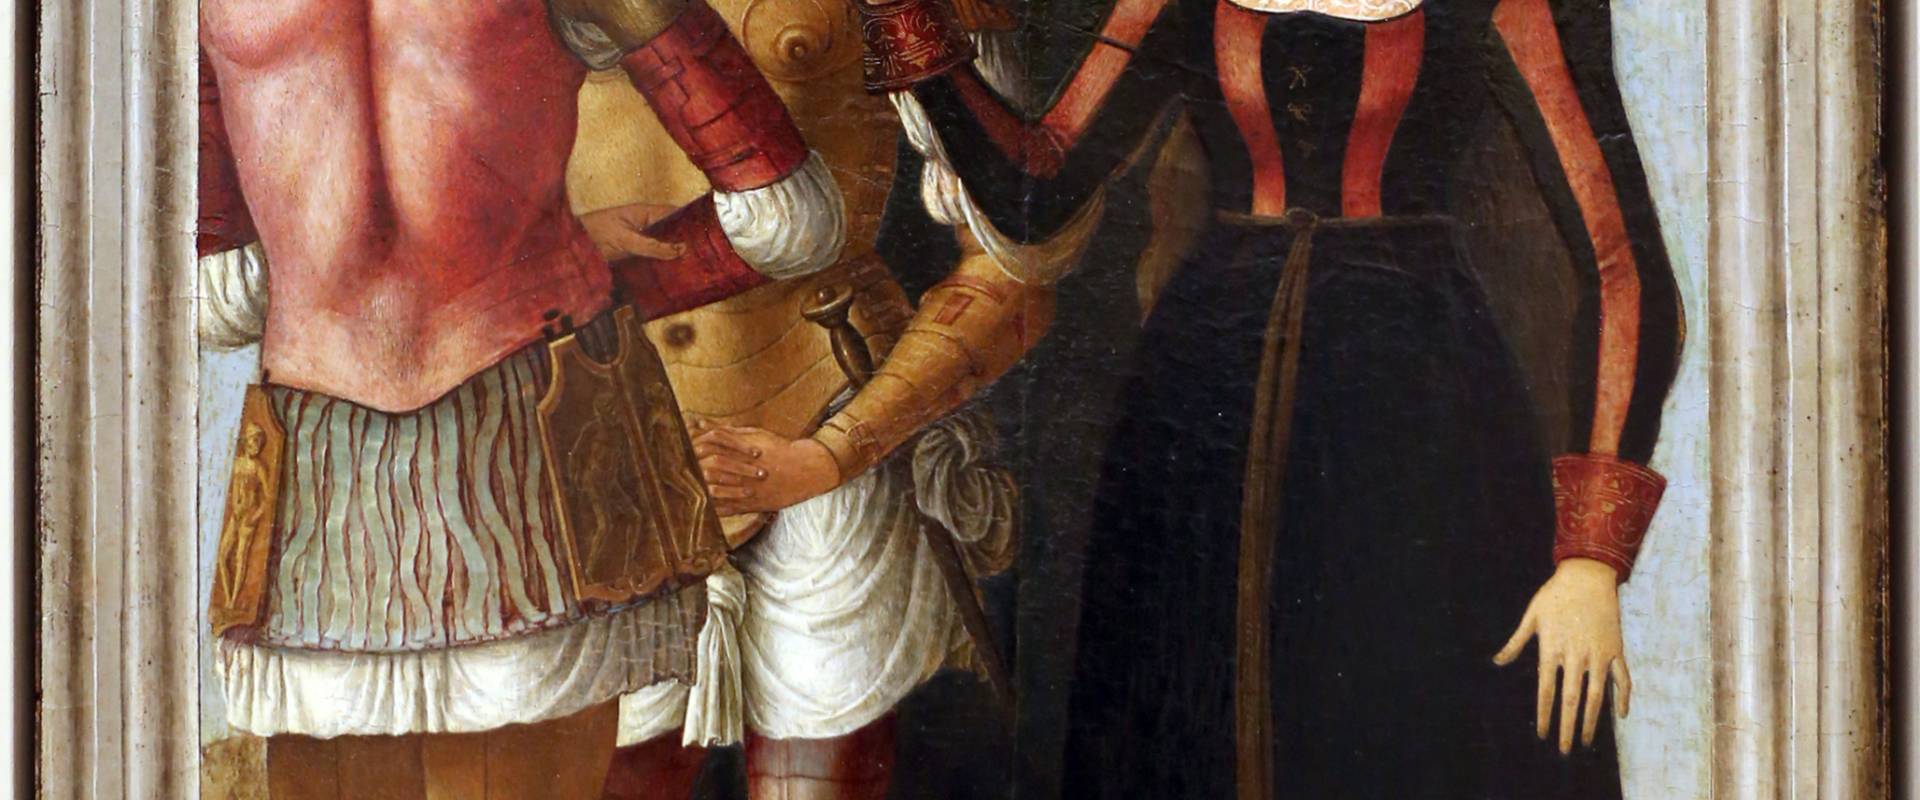 Ercole de' roberti e giovan francesco maineri, lucrezia, bruto e collatino, 1490 ca foto di Sailko